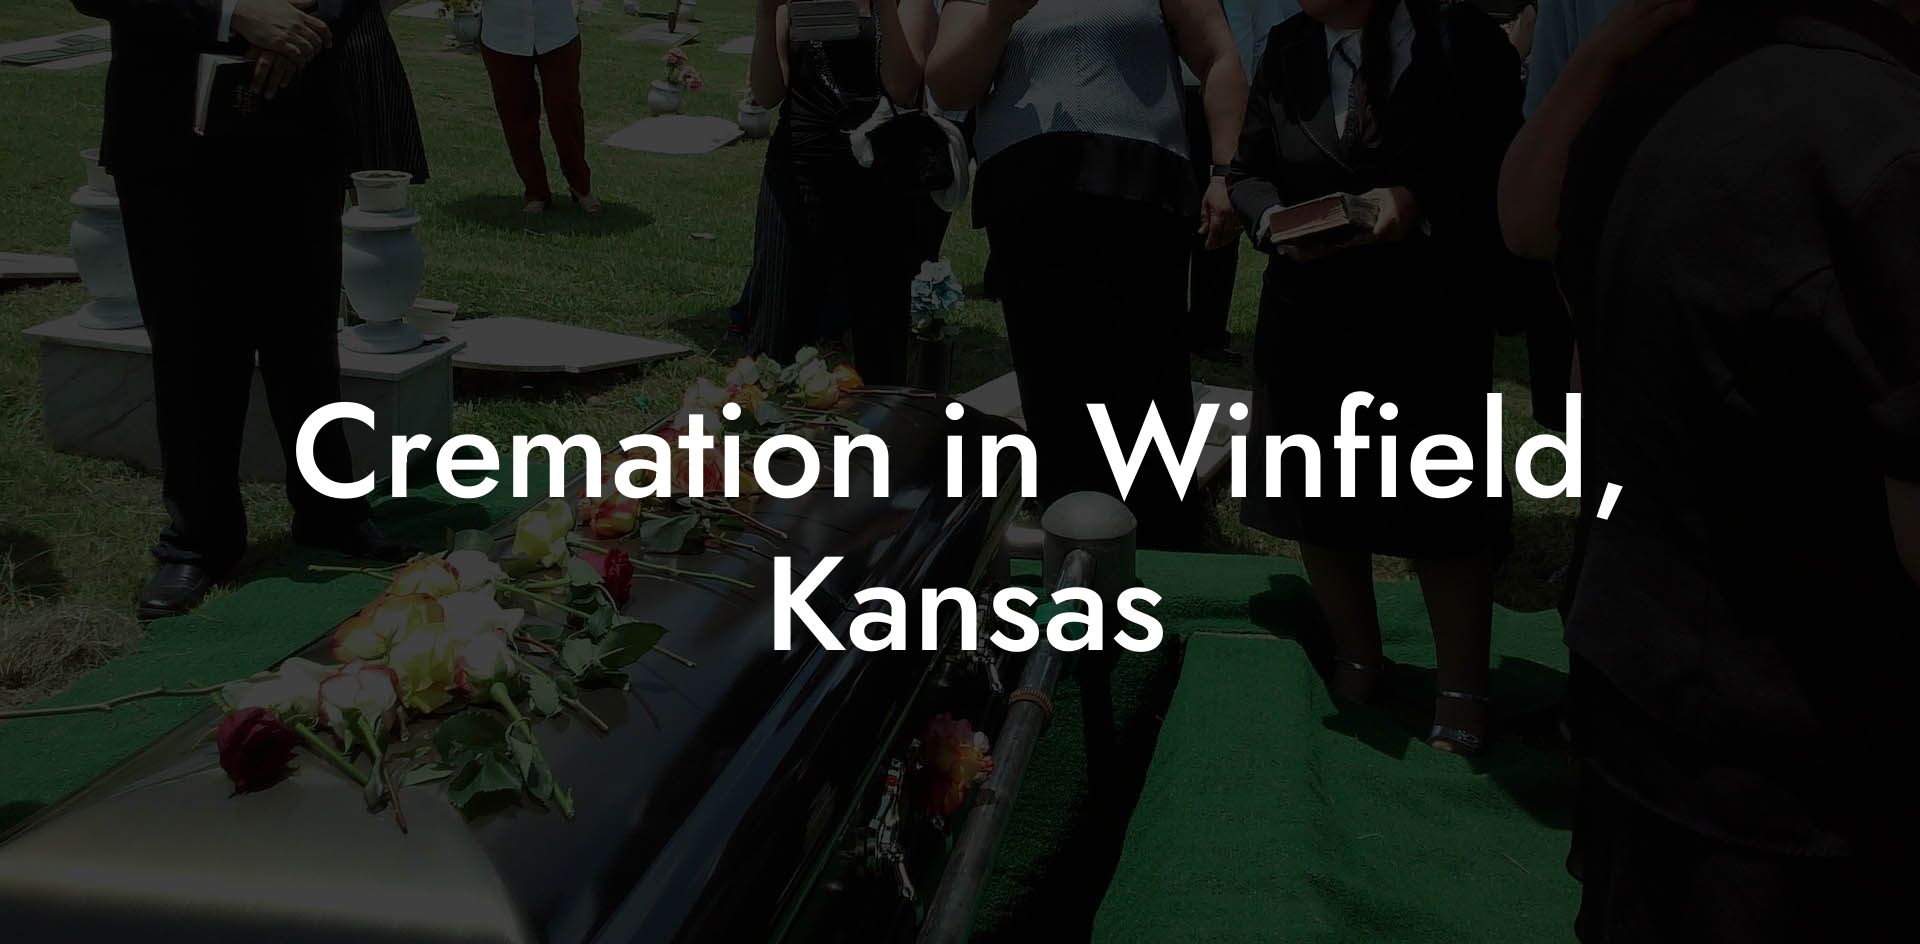 Cremation in Winfield, Kansas